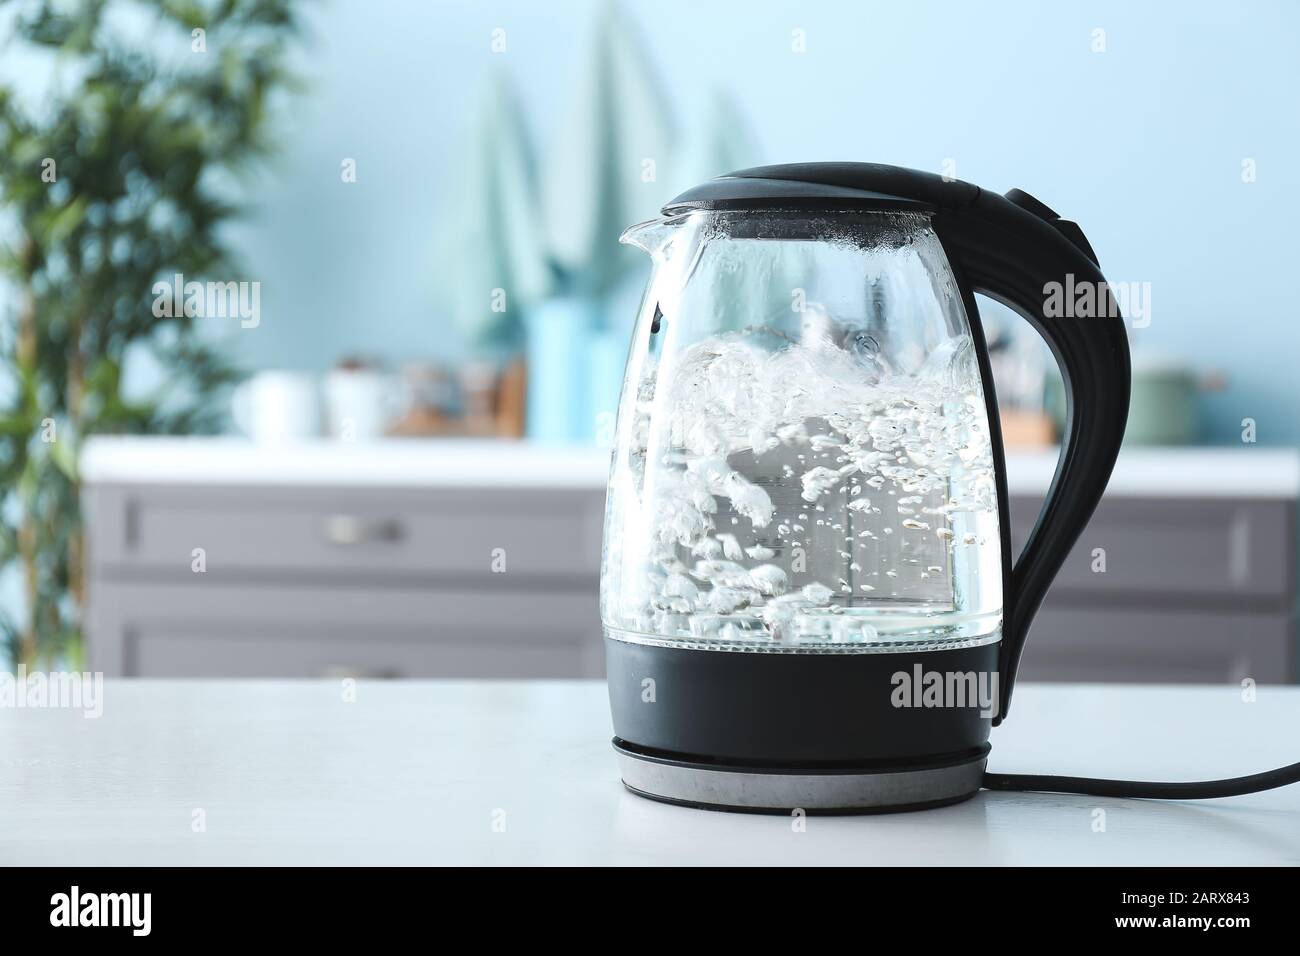 bouilloire électrique transparente avec eau bouillante sur la table dans la cuisine Banque D'Images